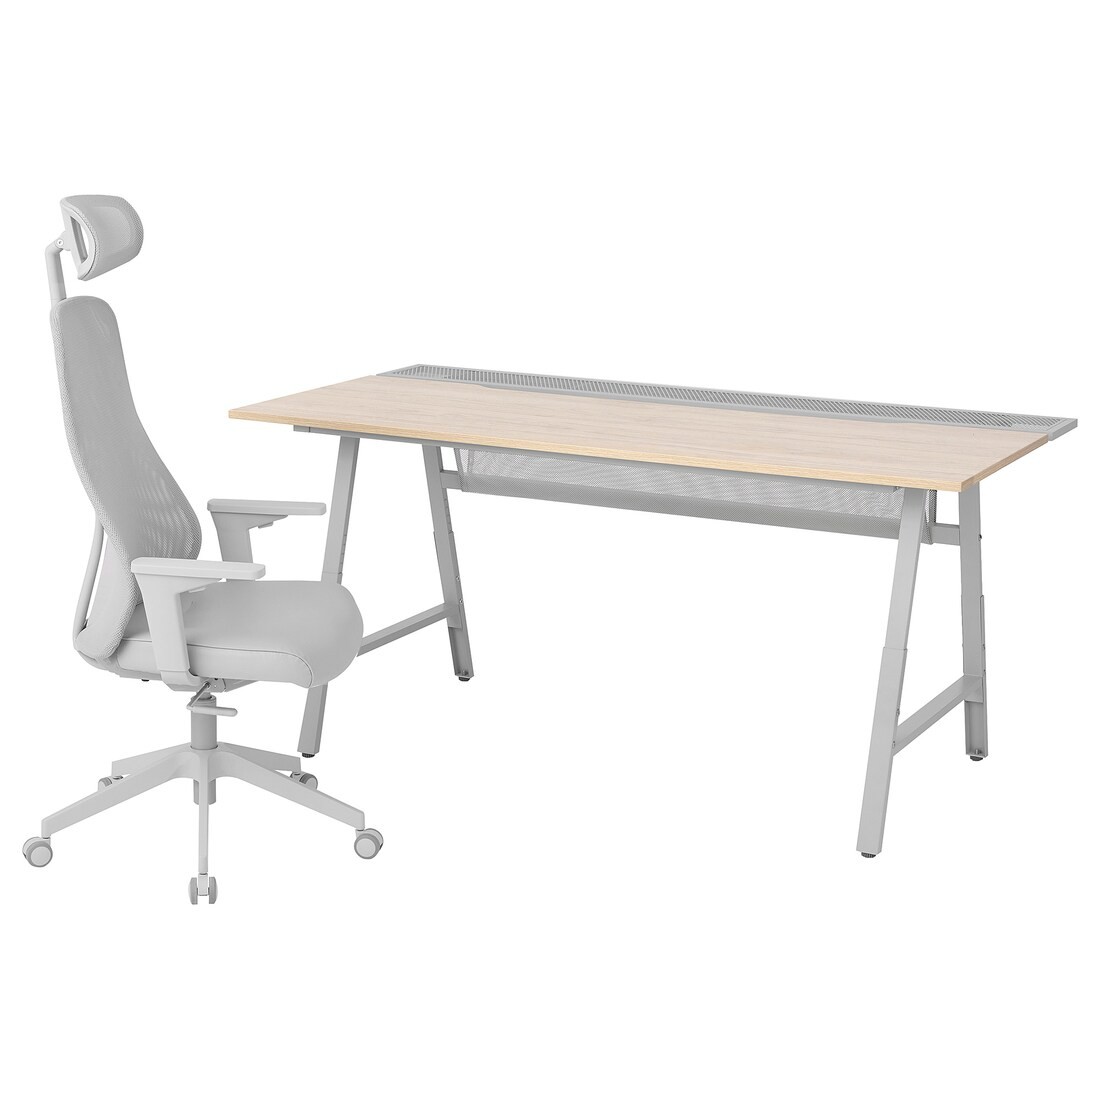 UTESPELARE / MATCHSPEL Геймерський стіл та крісло, імітація попелу / світло-сірий